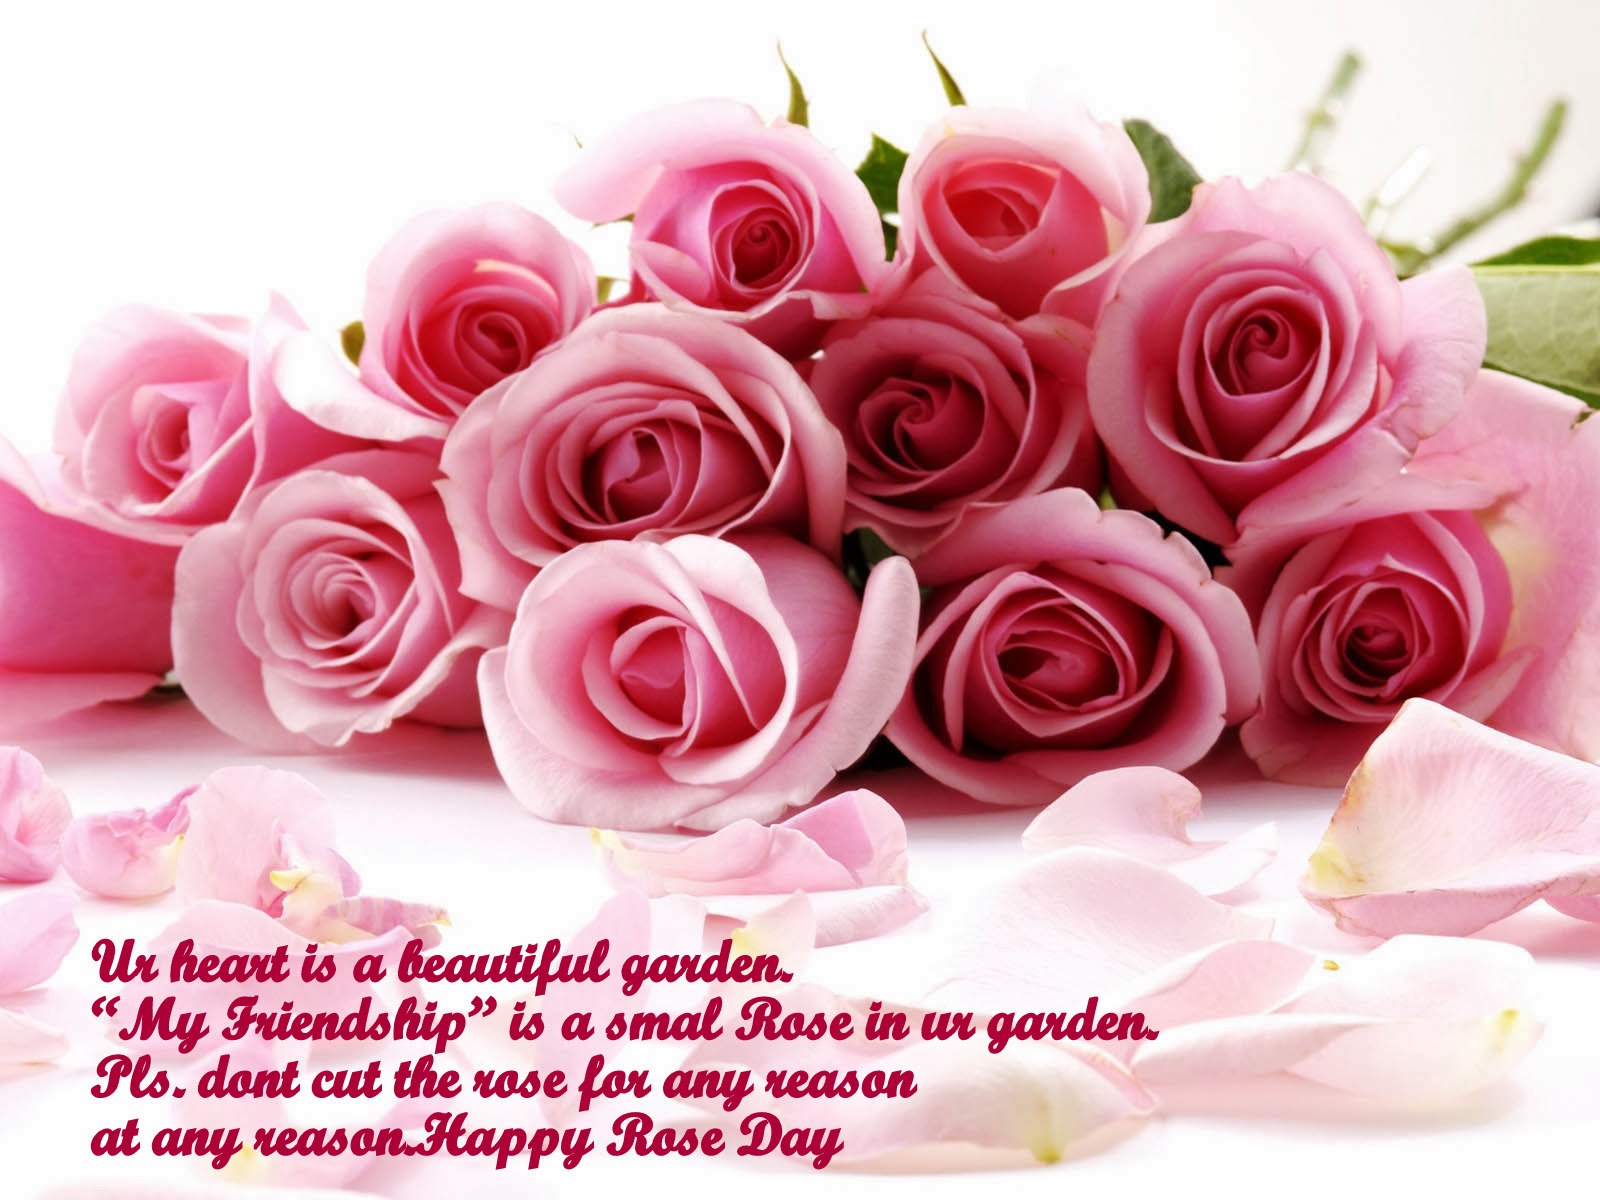 Happy Rose Day Wishes Images - ShayariMaza